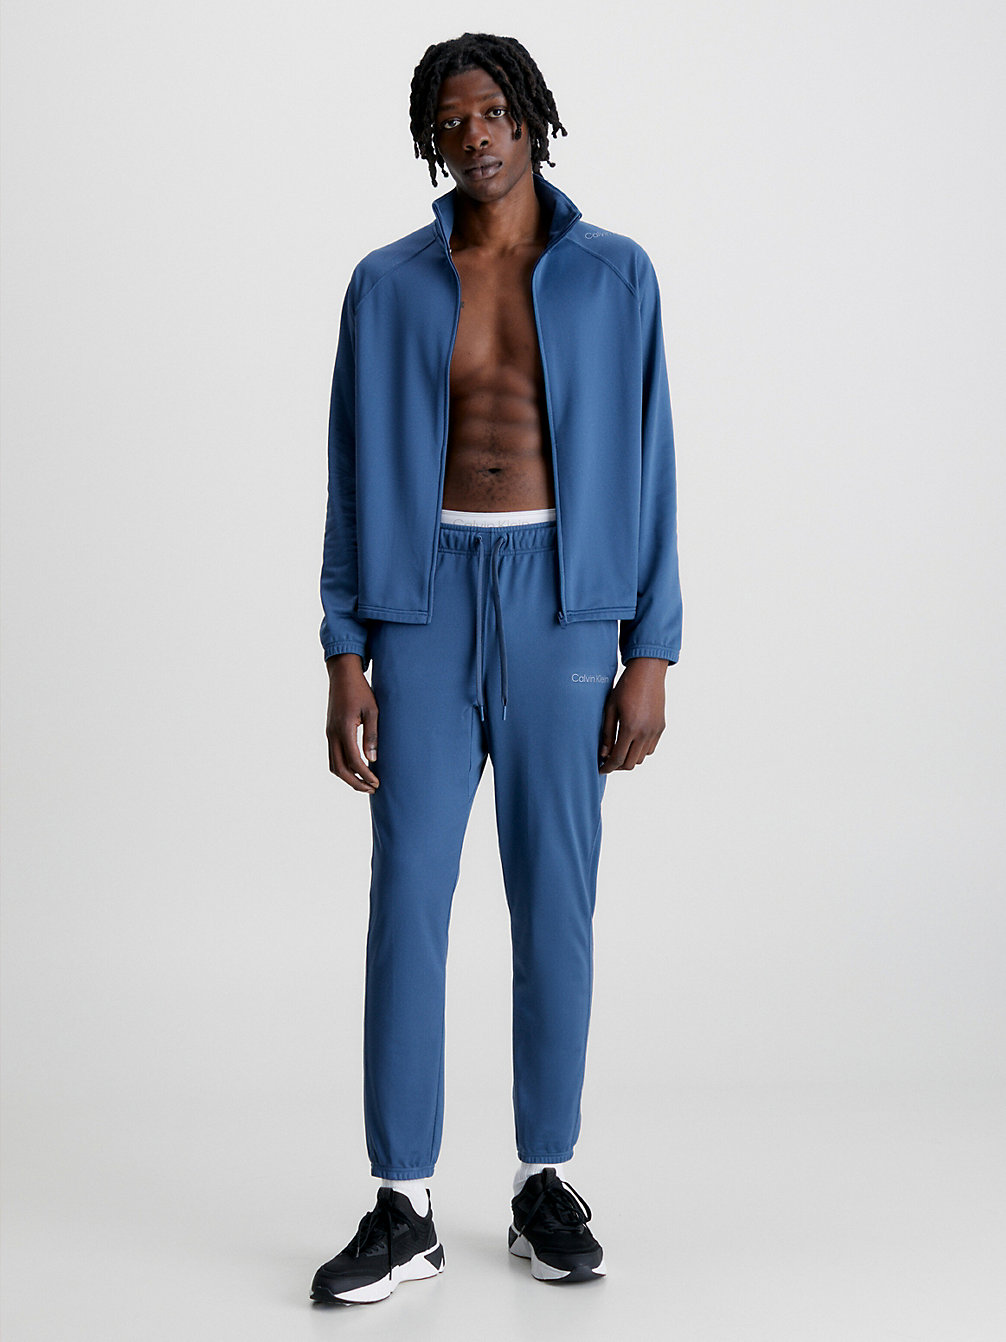 CRAYON BLUE Bequemer Trainingsanzug undefined Herren Calvin Klein